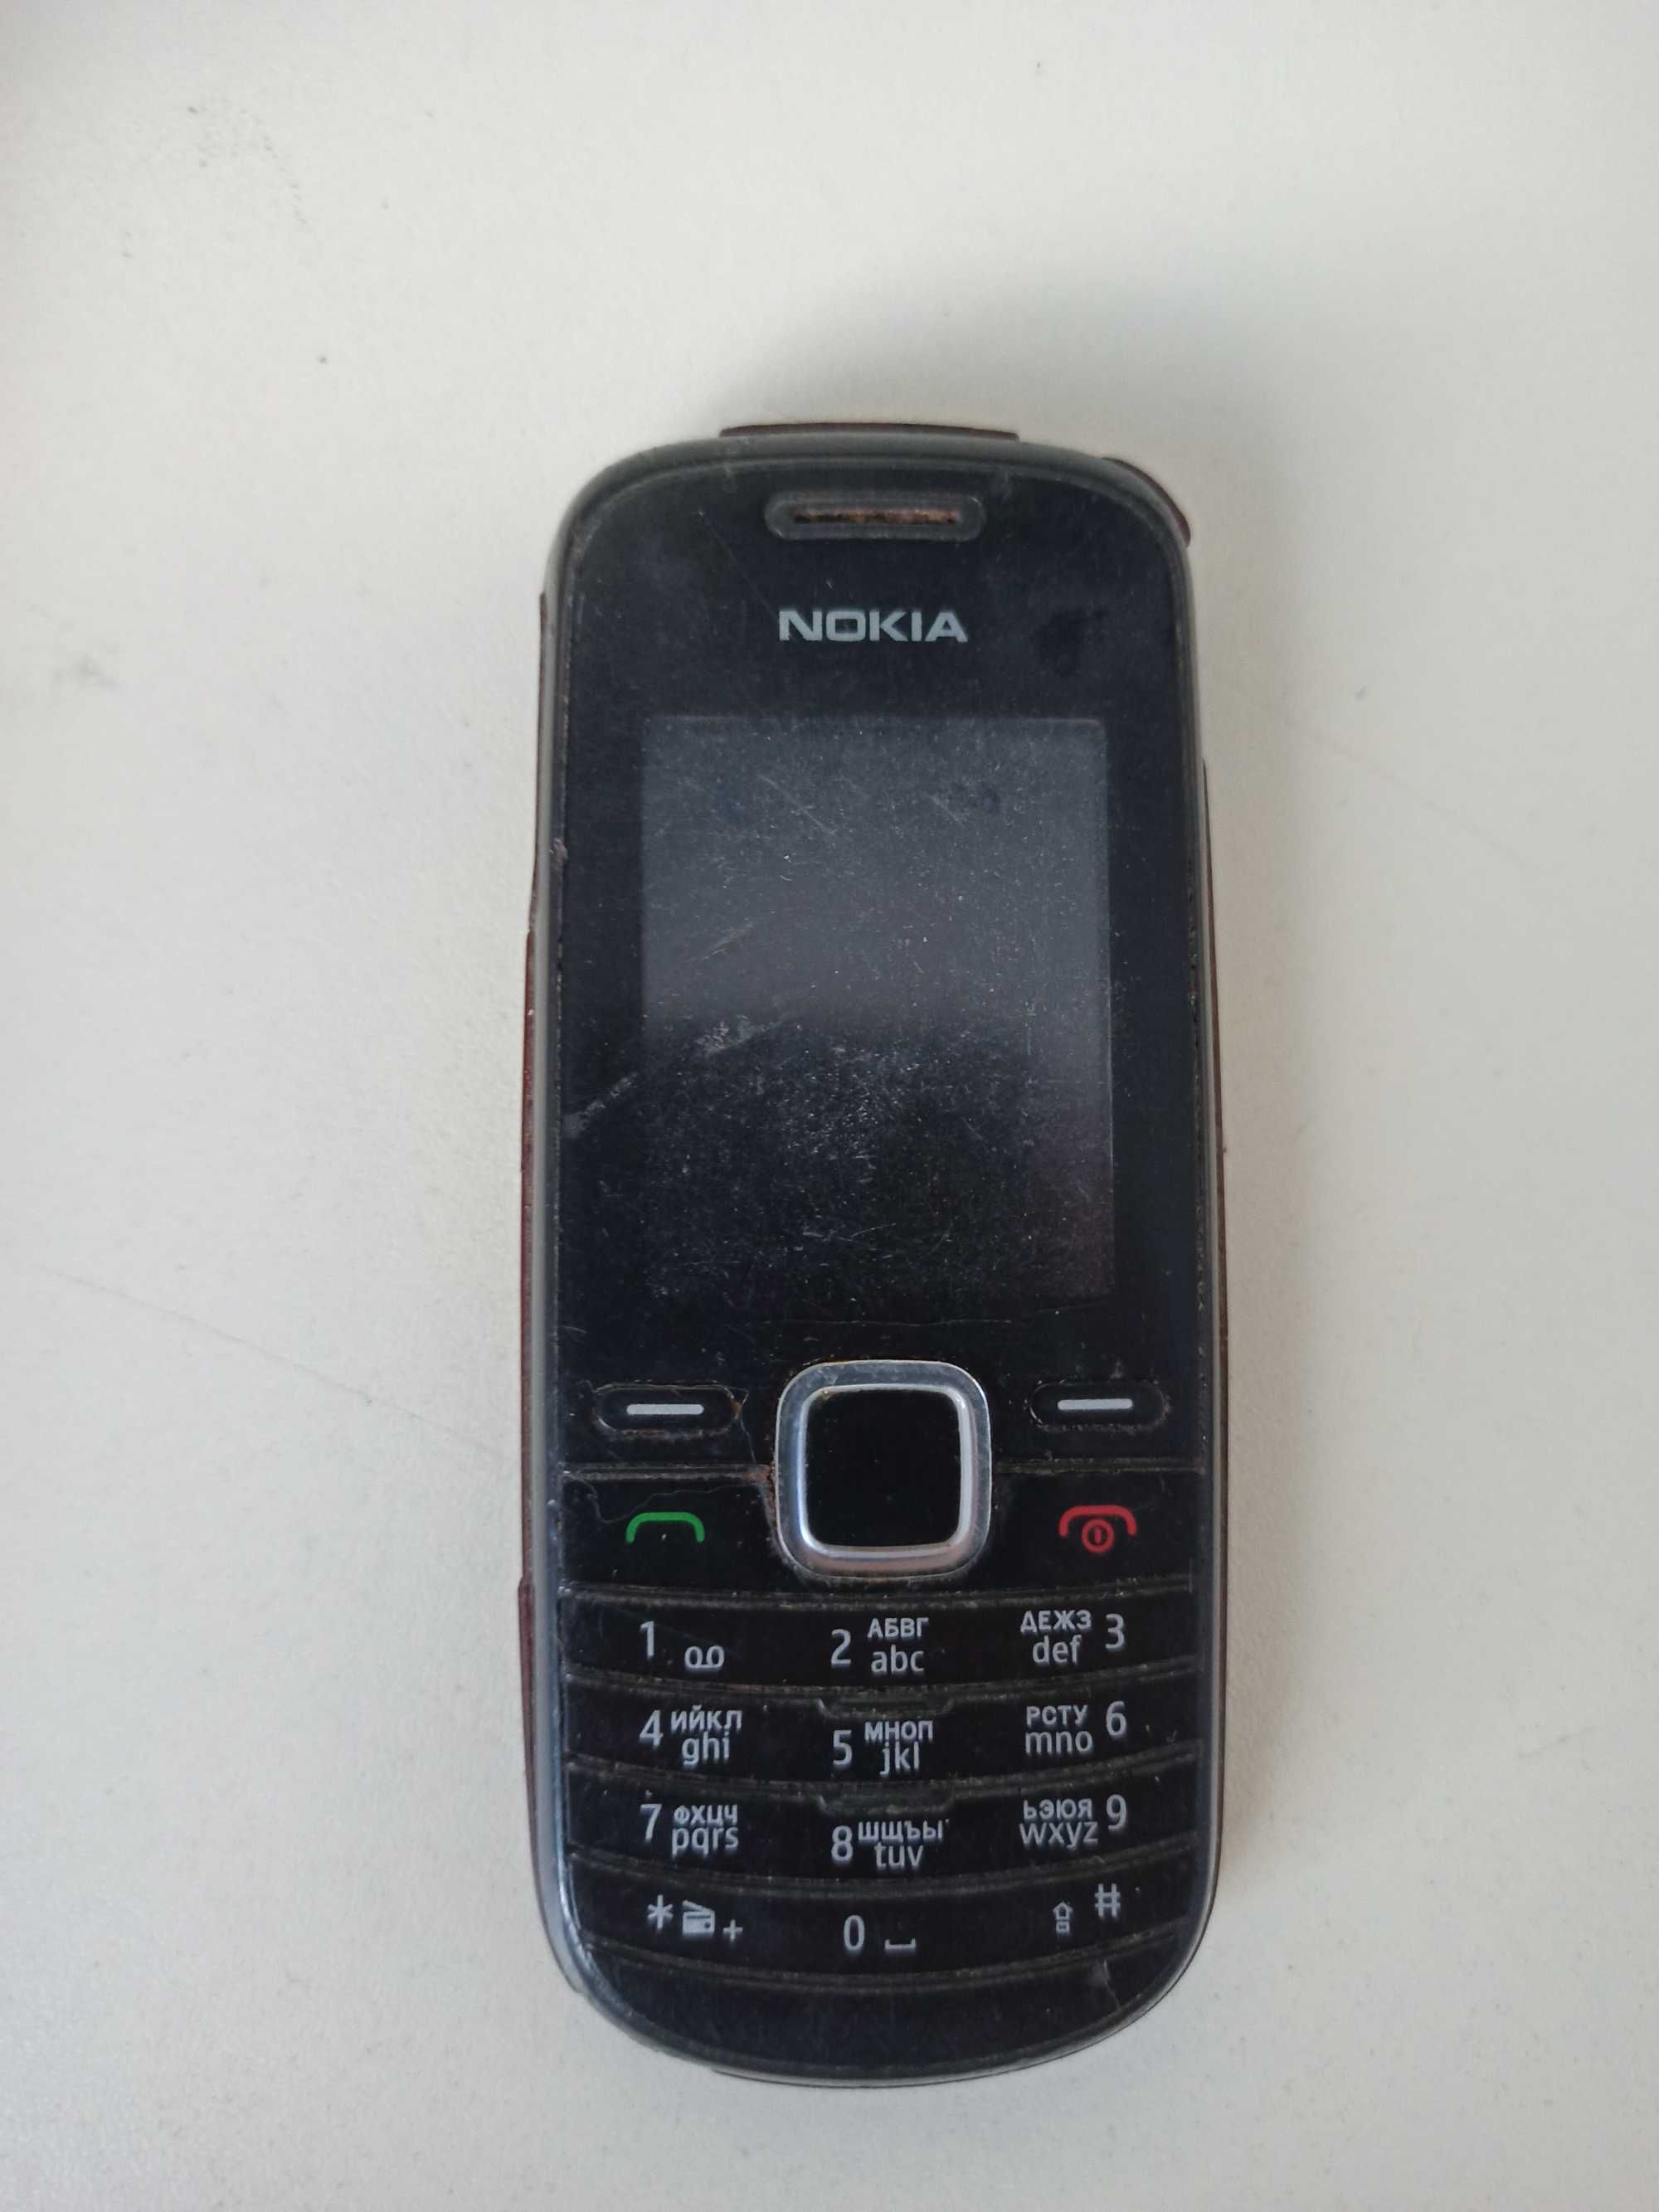 Телефоны доноры на запчасти Nokia, Samsung (большой выбор)